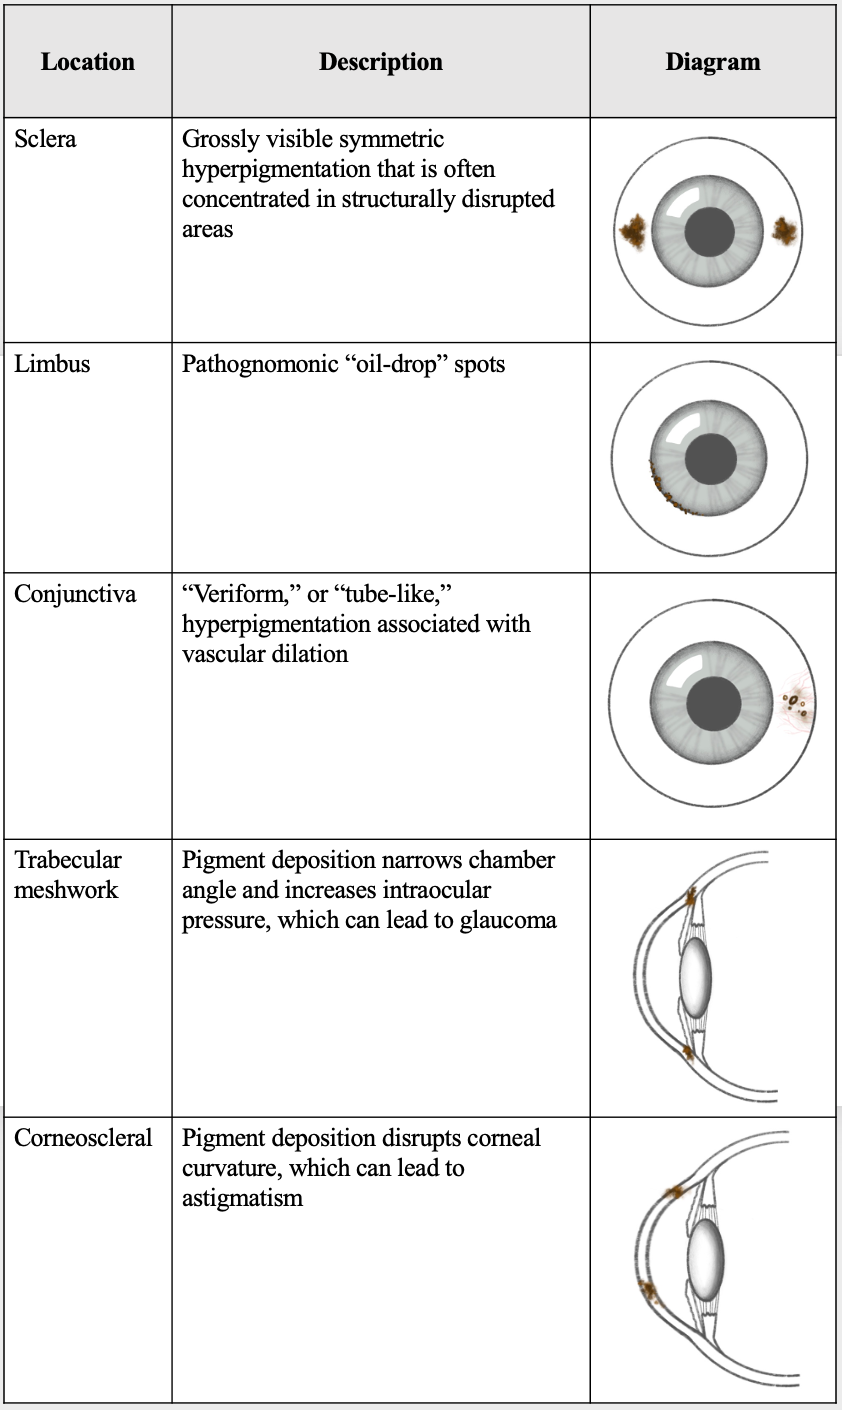 Locations of ocular ochronosis